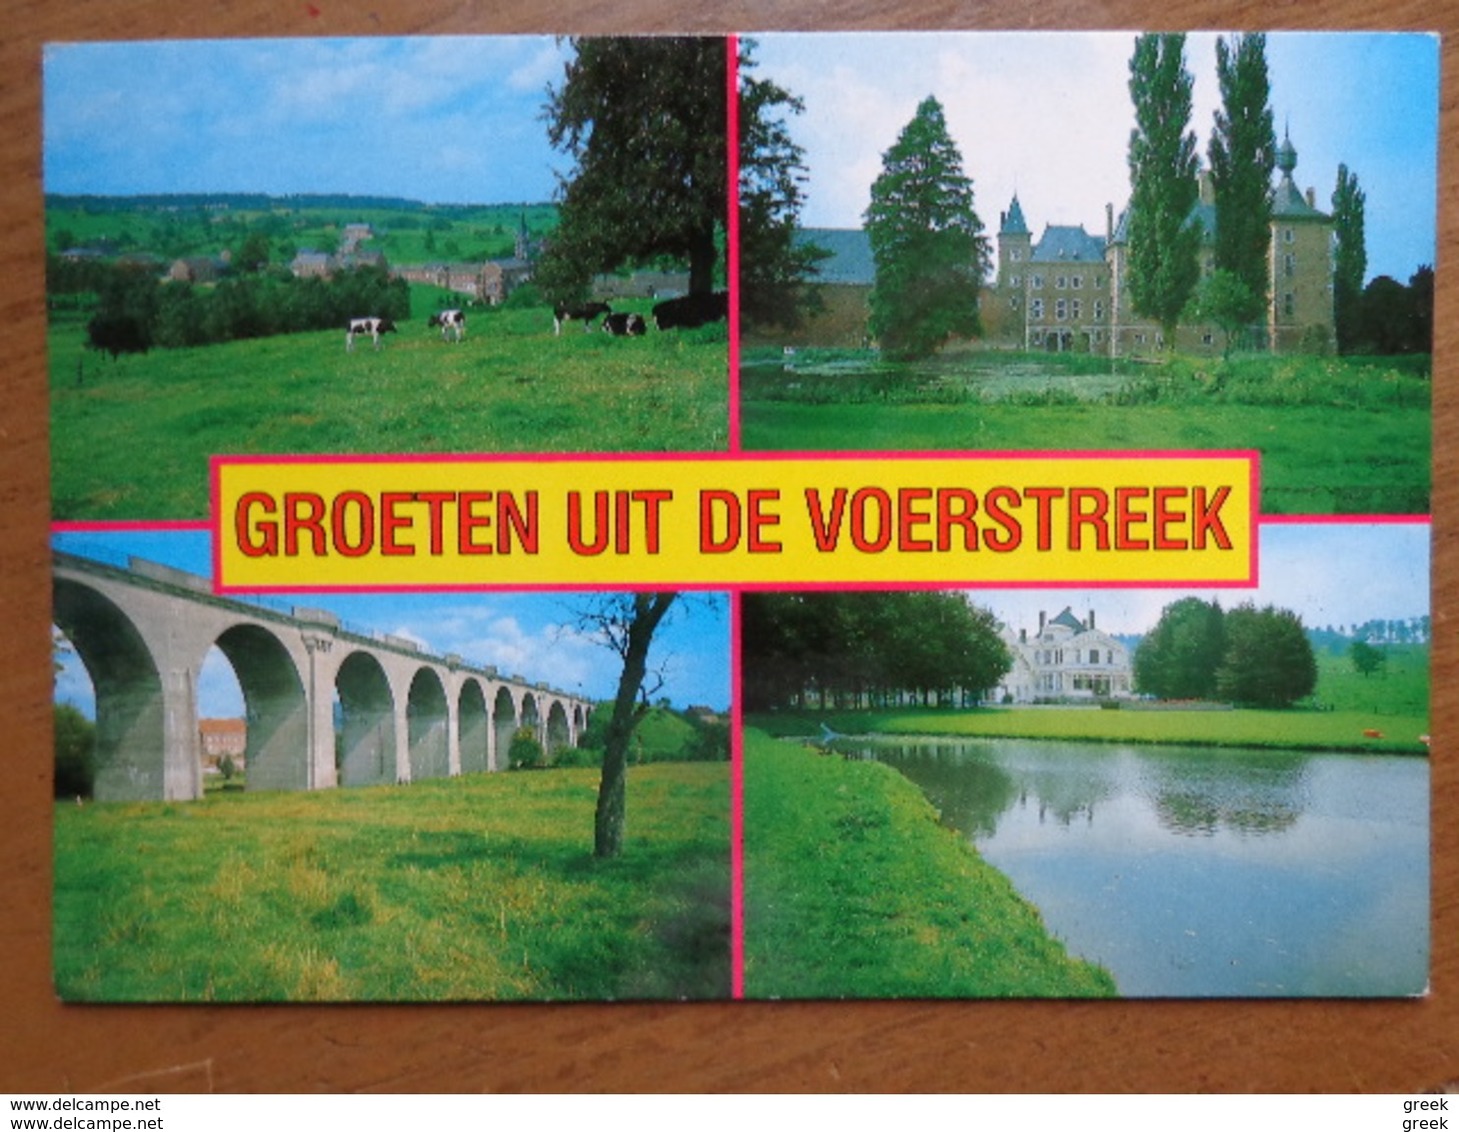 Doos postkaarten (3kg156) Verschillende landen en thema's - zie enkele foto's